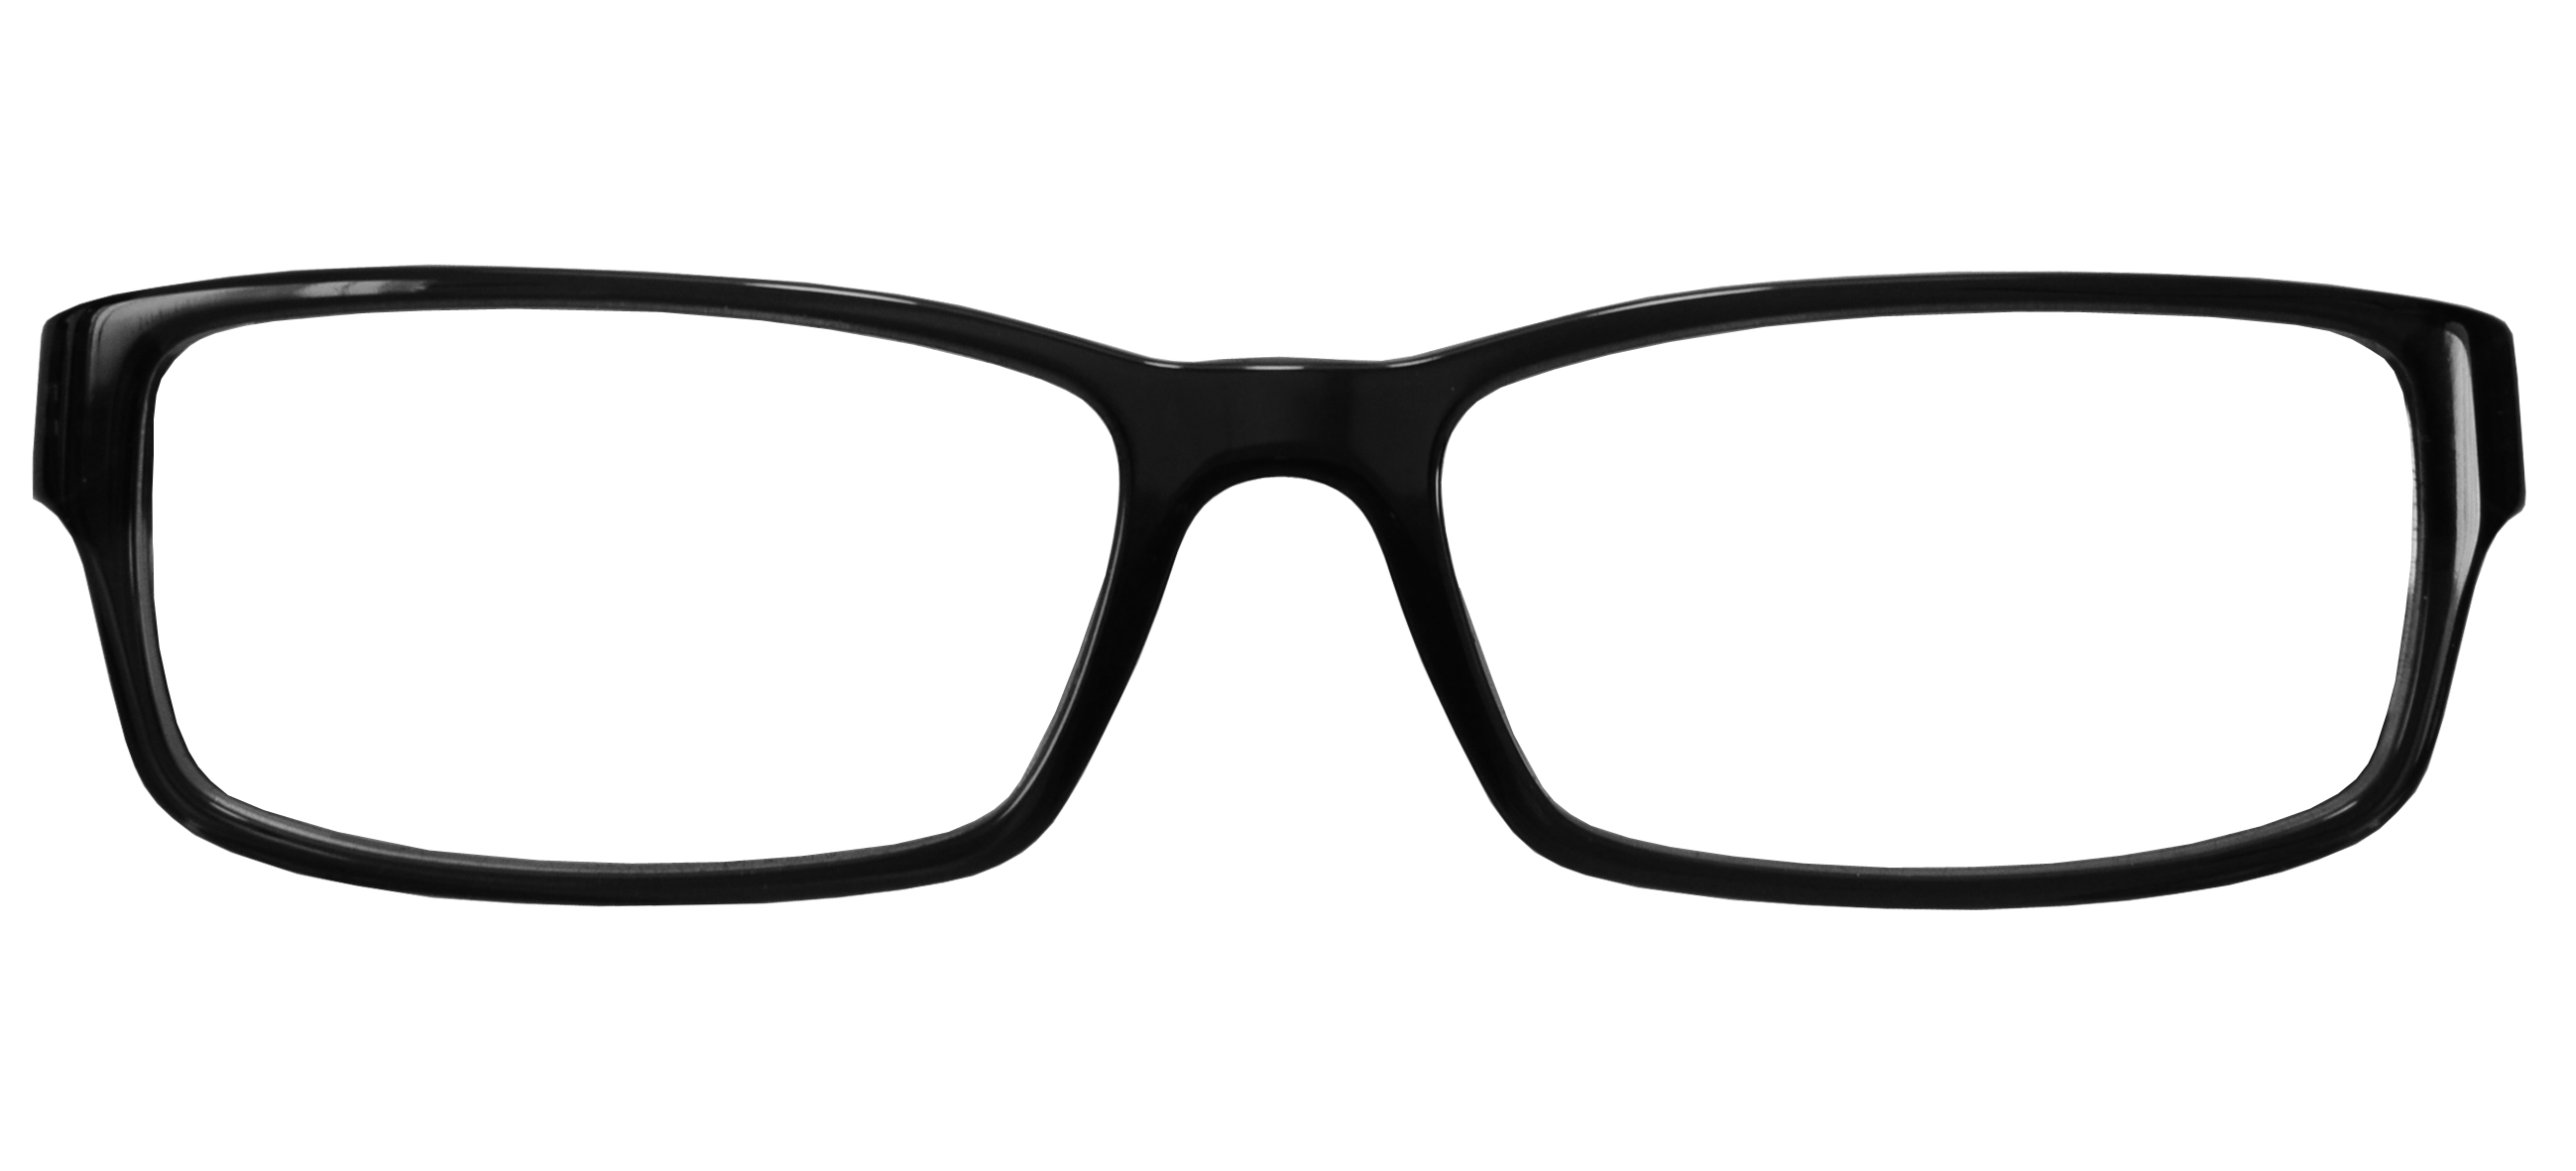 Eyeglass Sunglasses Lens Horn-Rimmed Prescription Glasses Clipart